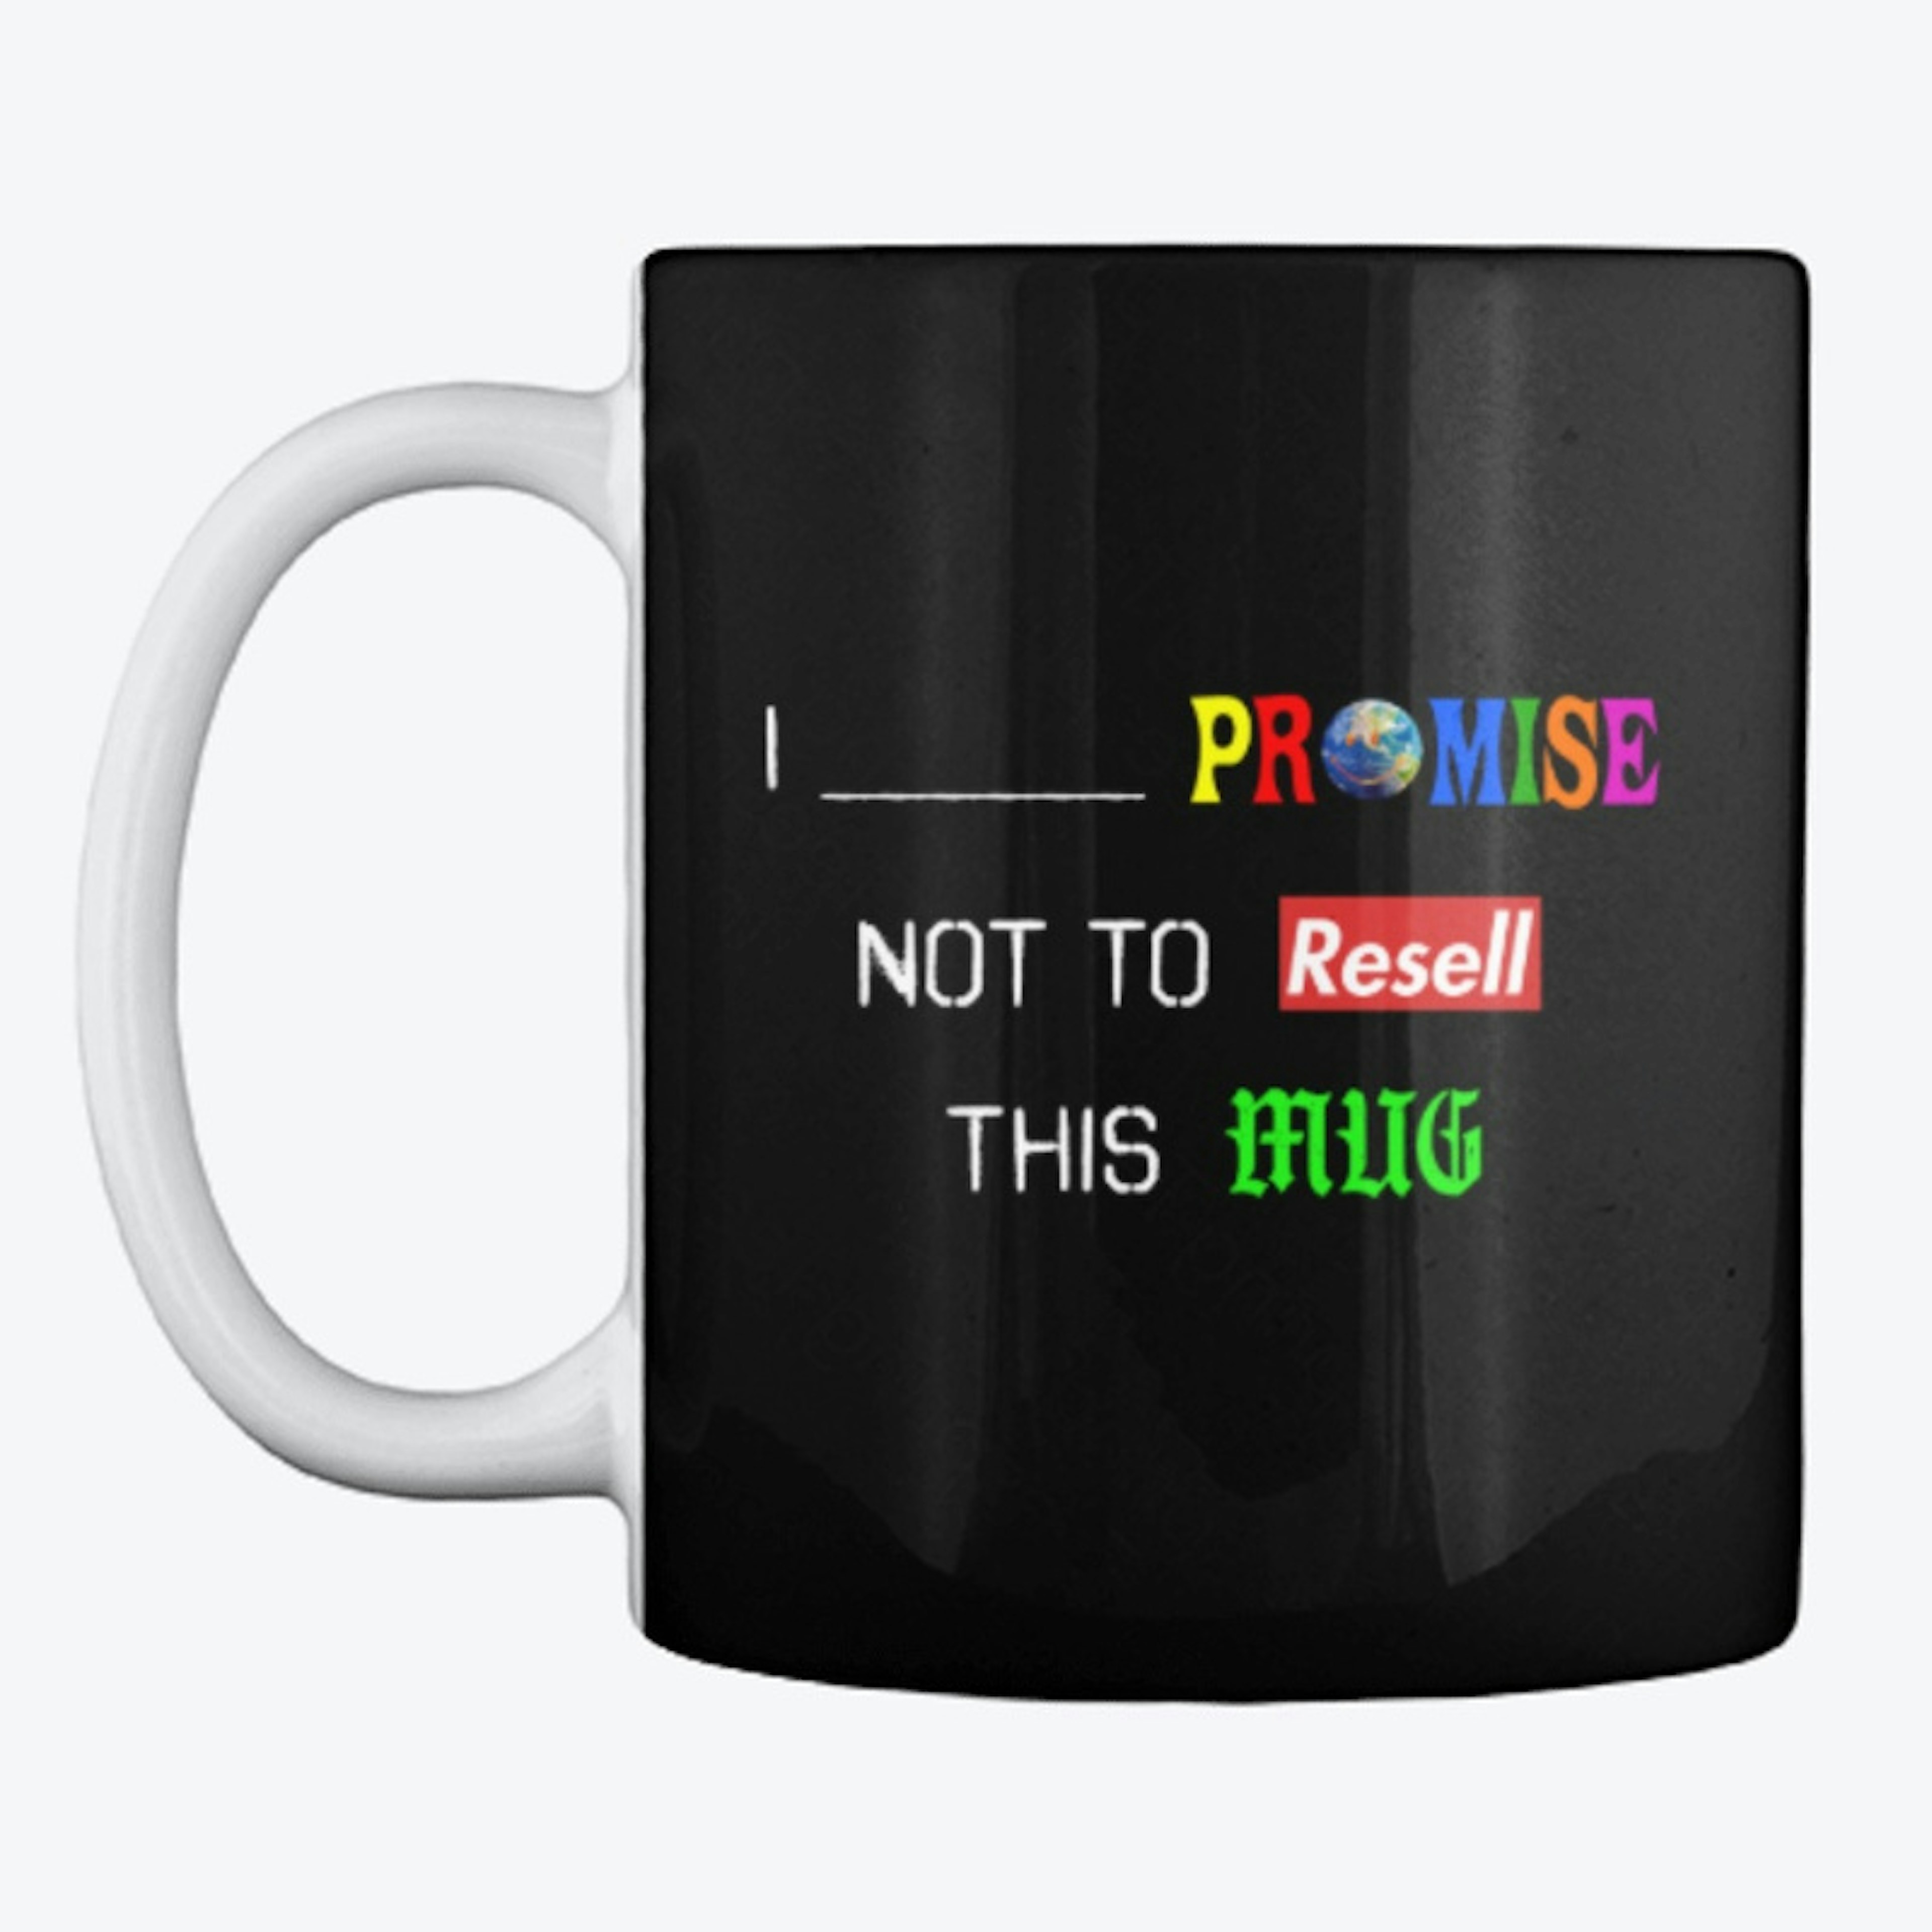 The I Promise Mug